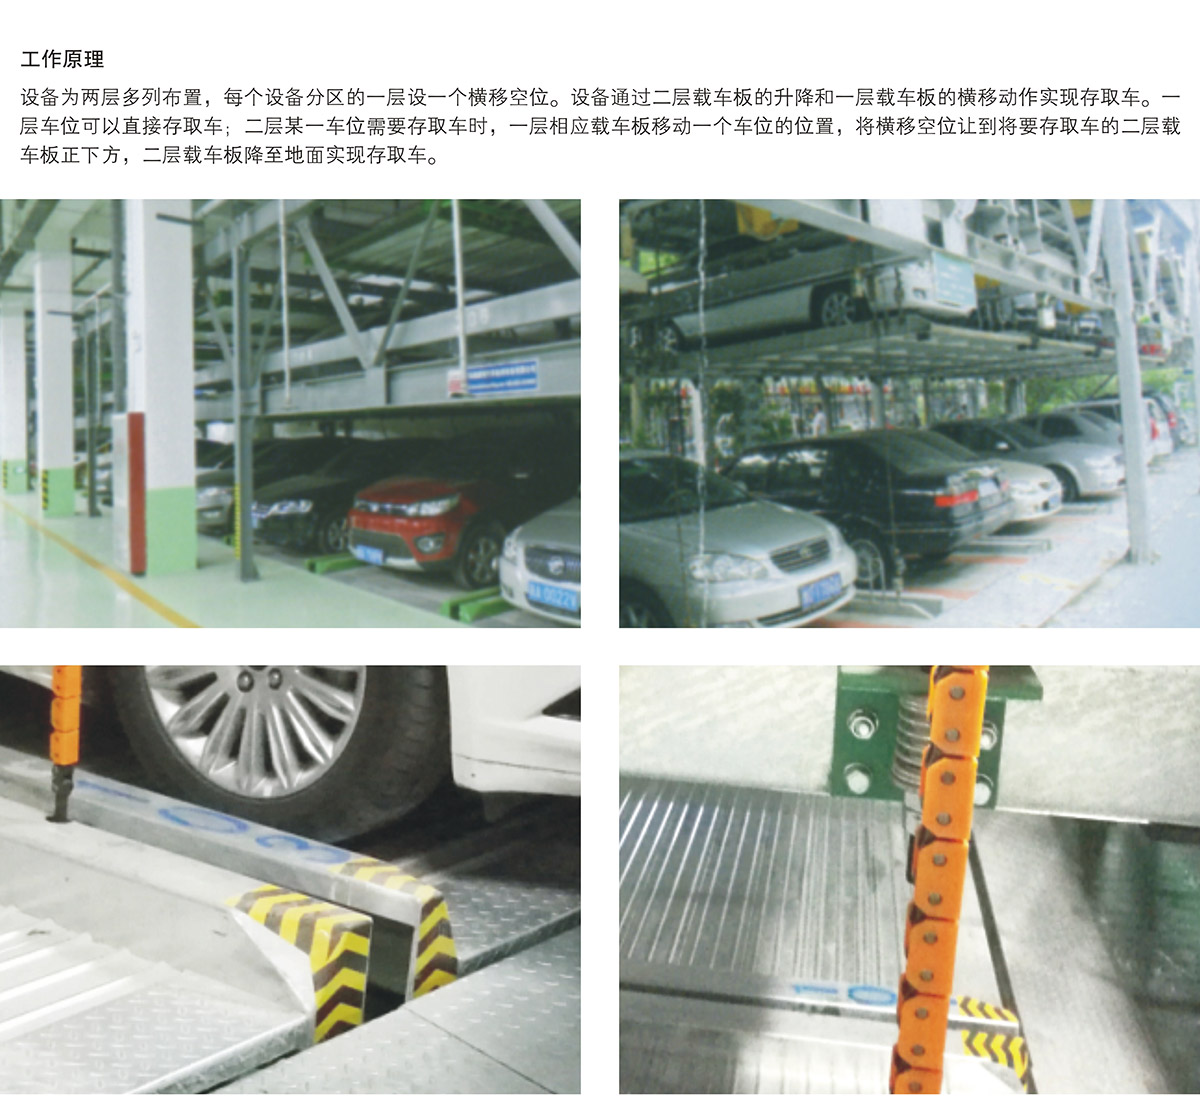 机械停车PSH2二层升降横移立体车库设备工作原理.jpg